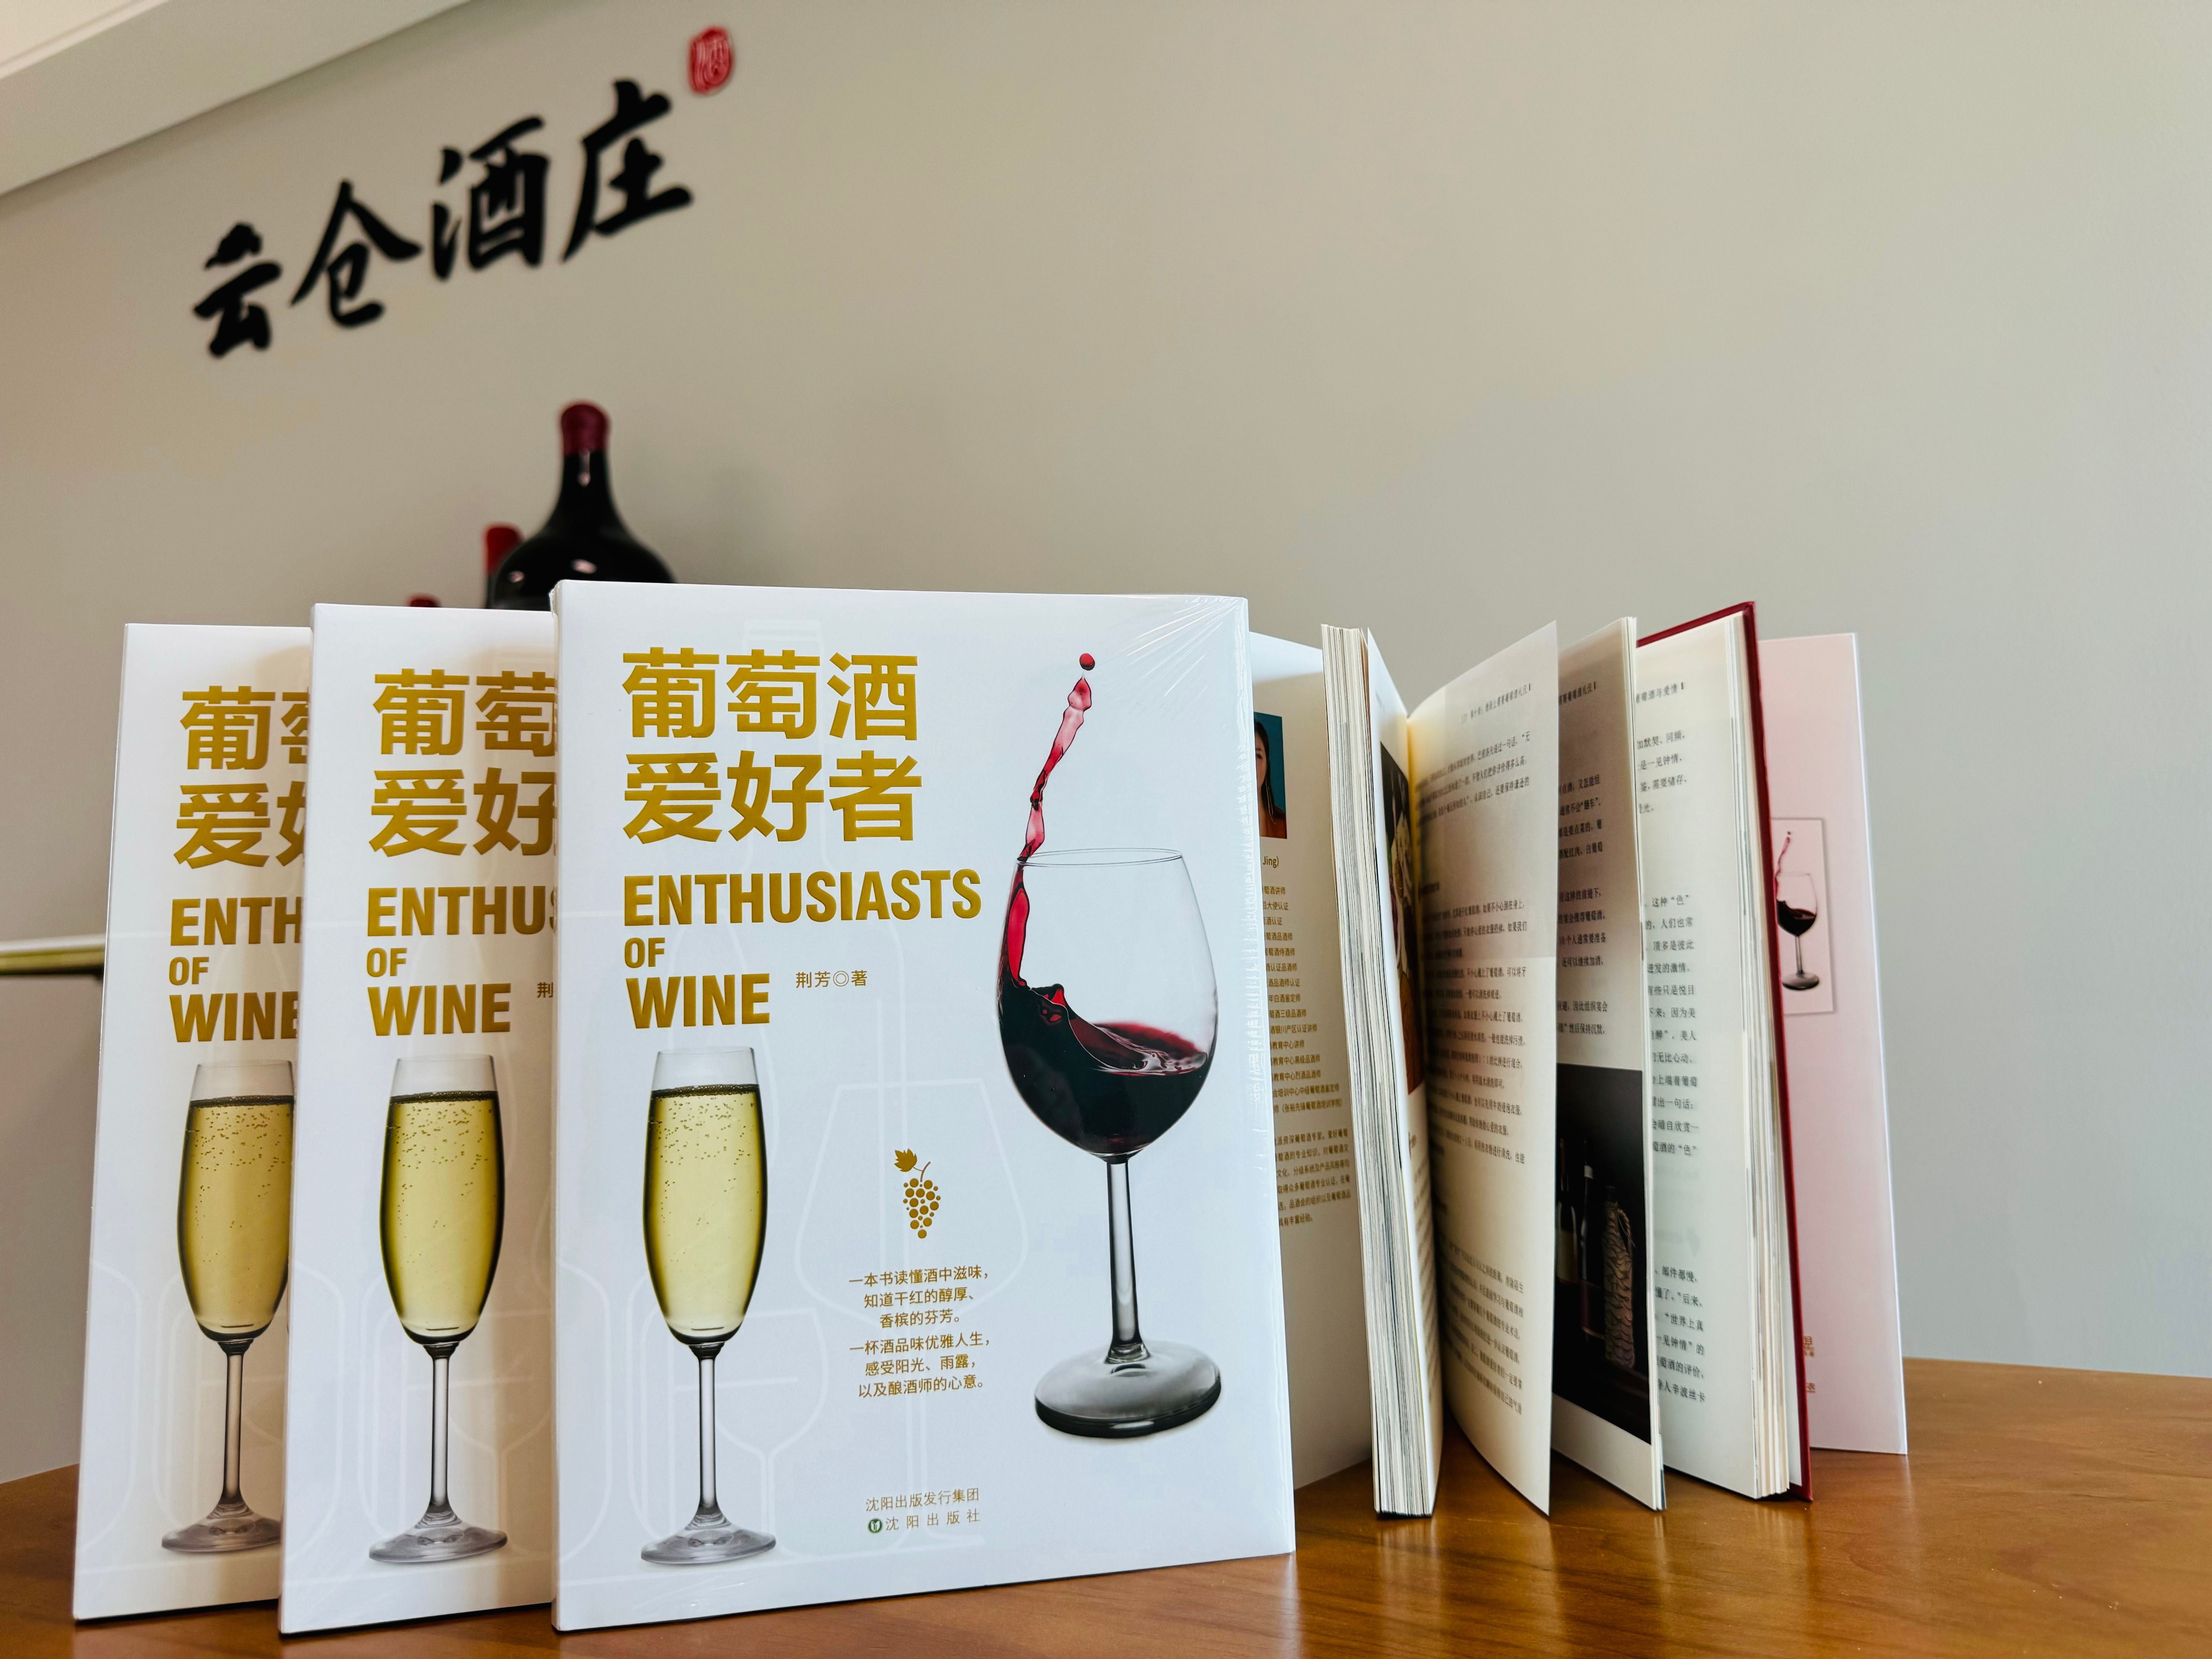 品酒师荆芳老师的《葡萄酒爱好者》图书上线了